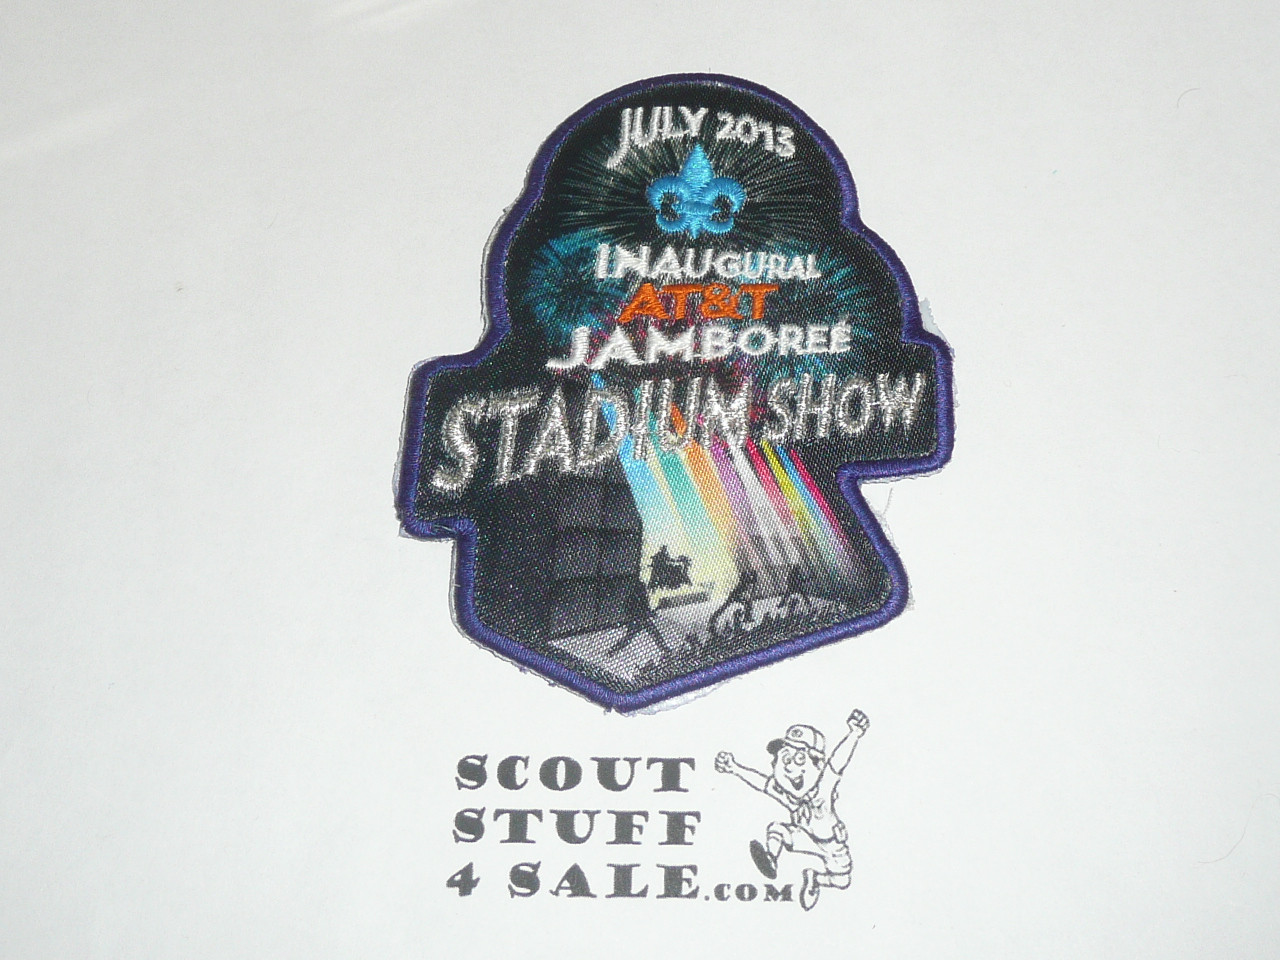 2013 National Jamboree Inaugural Stadium Show Patch